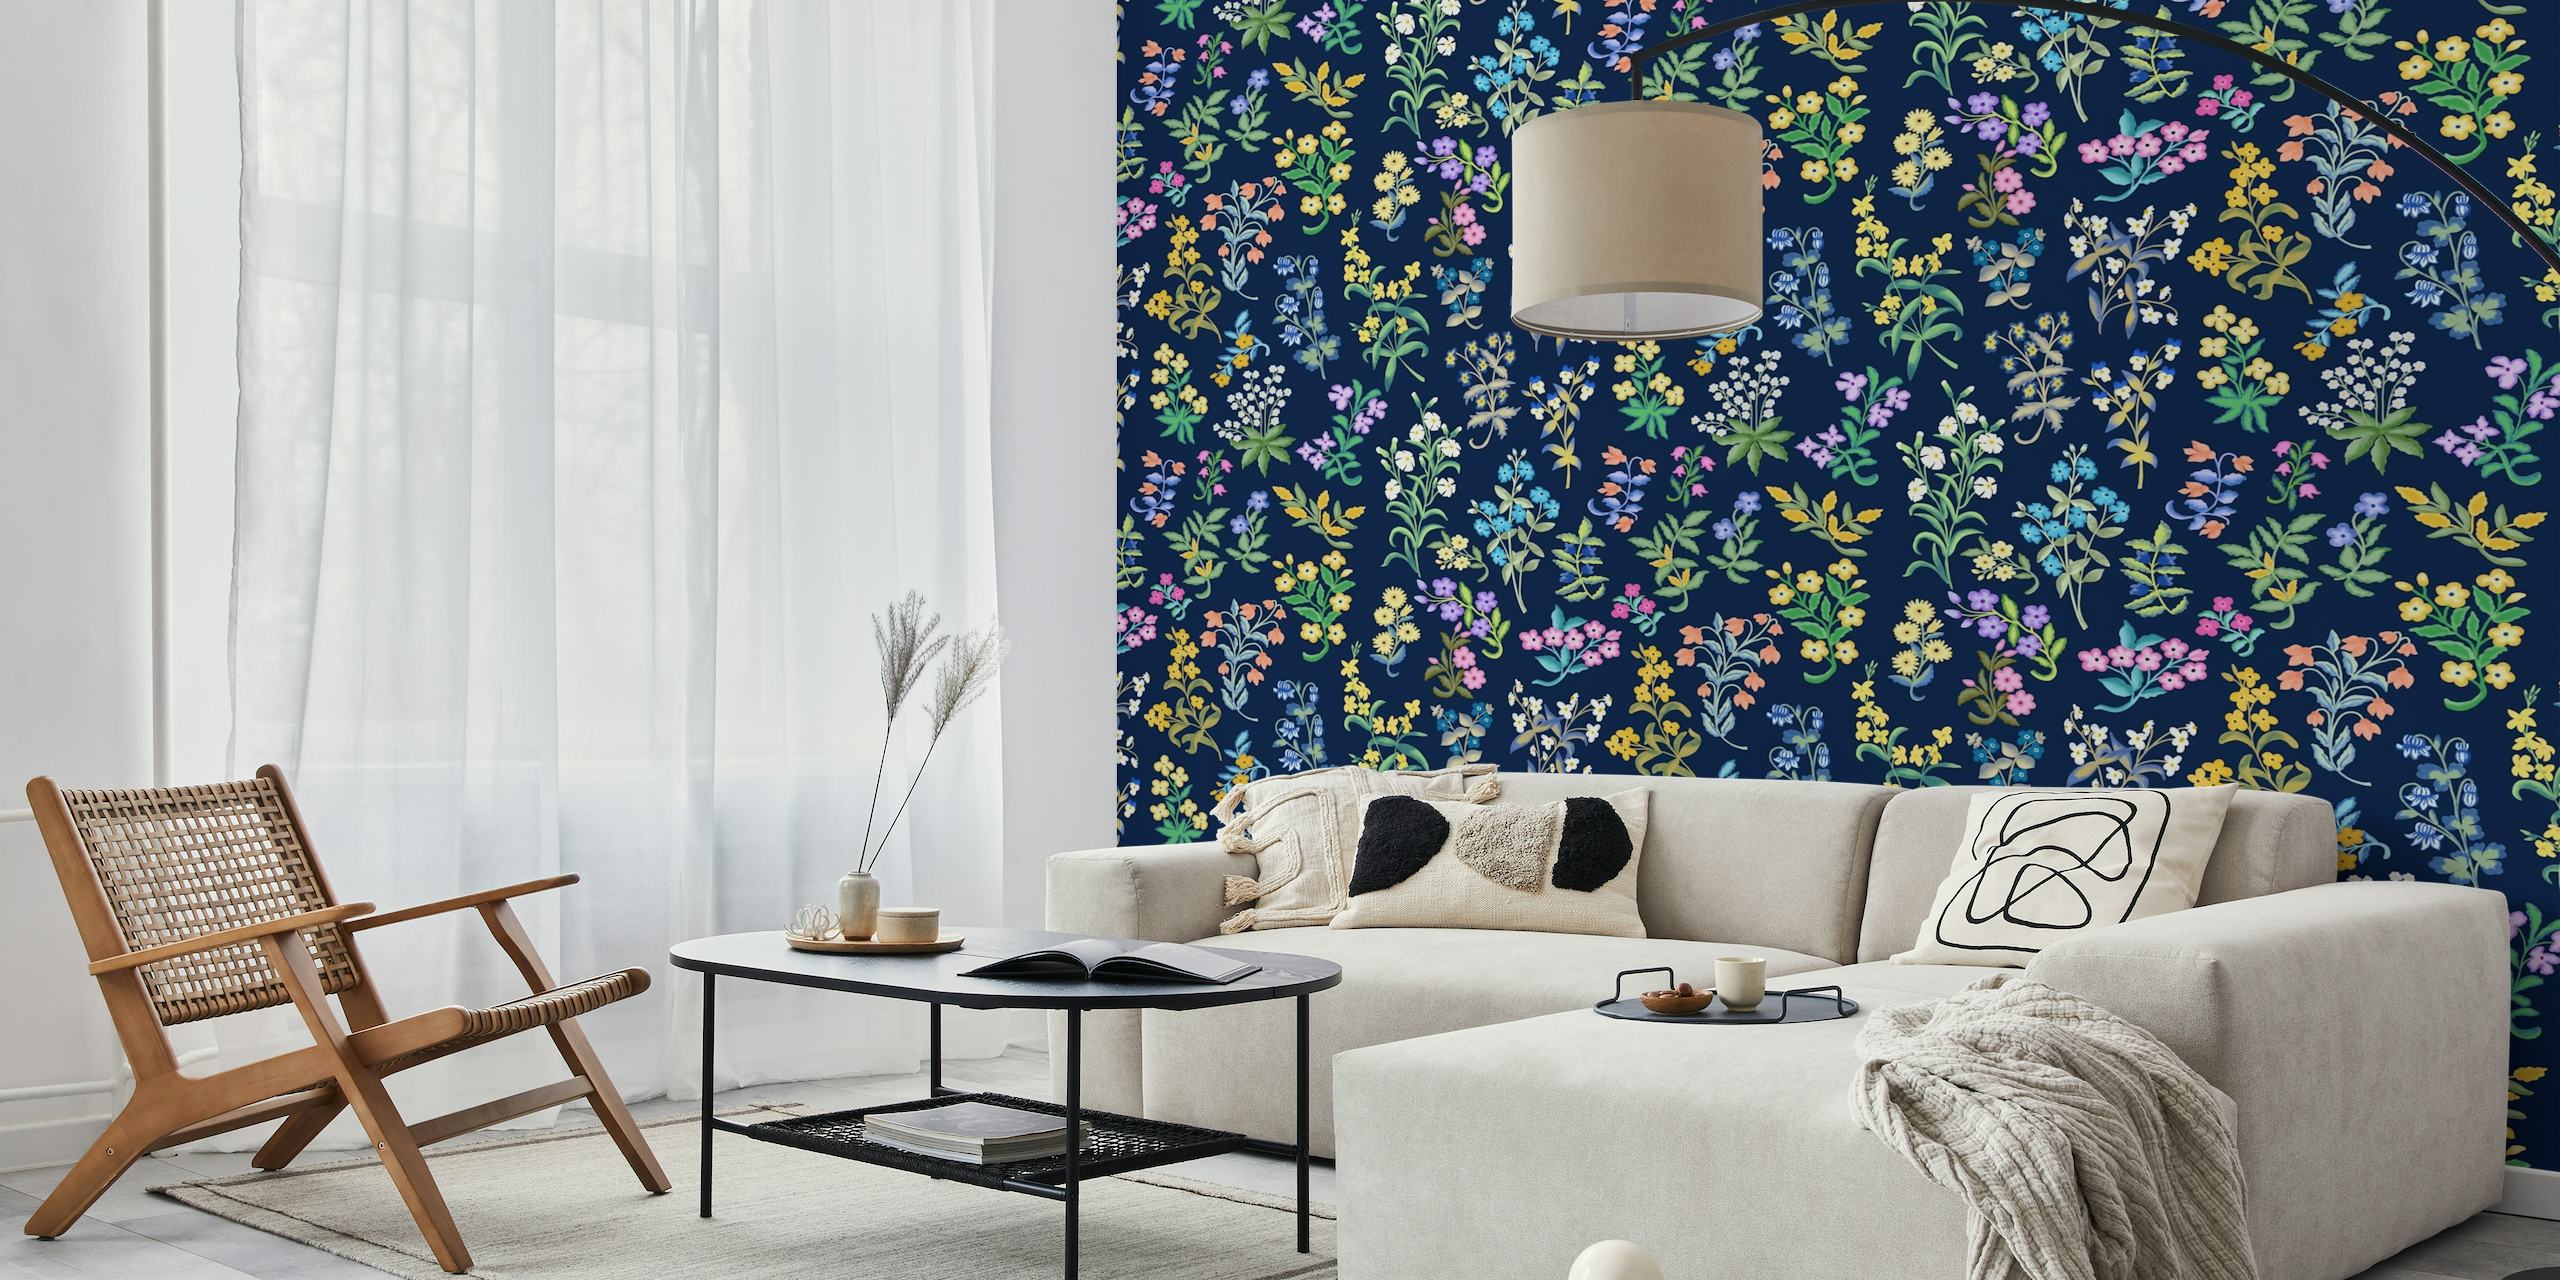 Fototapete Blumen Millefleurs-Muster mit bunten blumen auf dunkelblauem Hintergrund